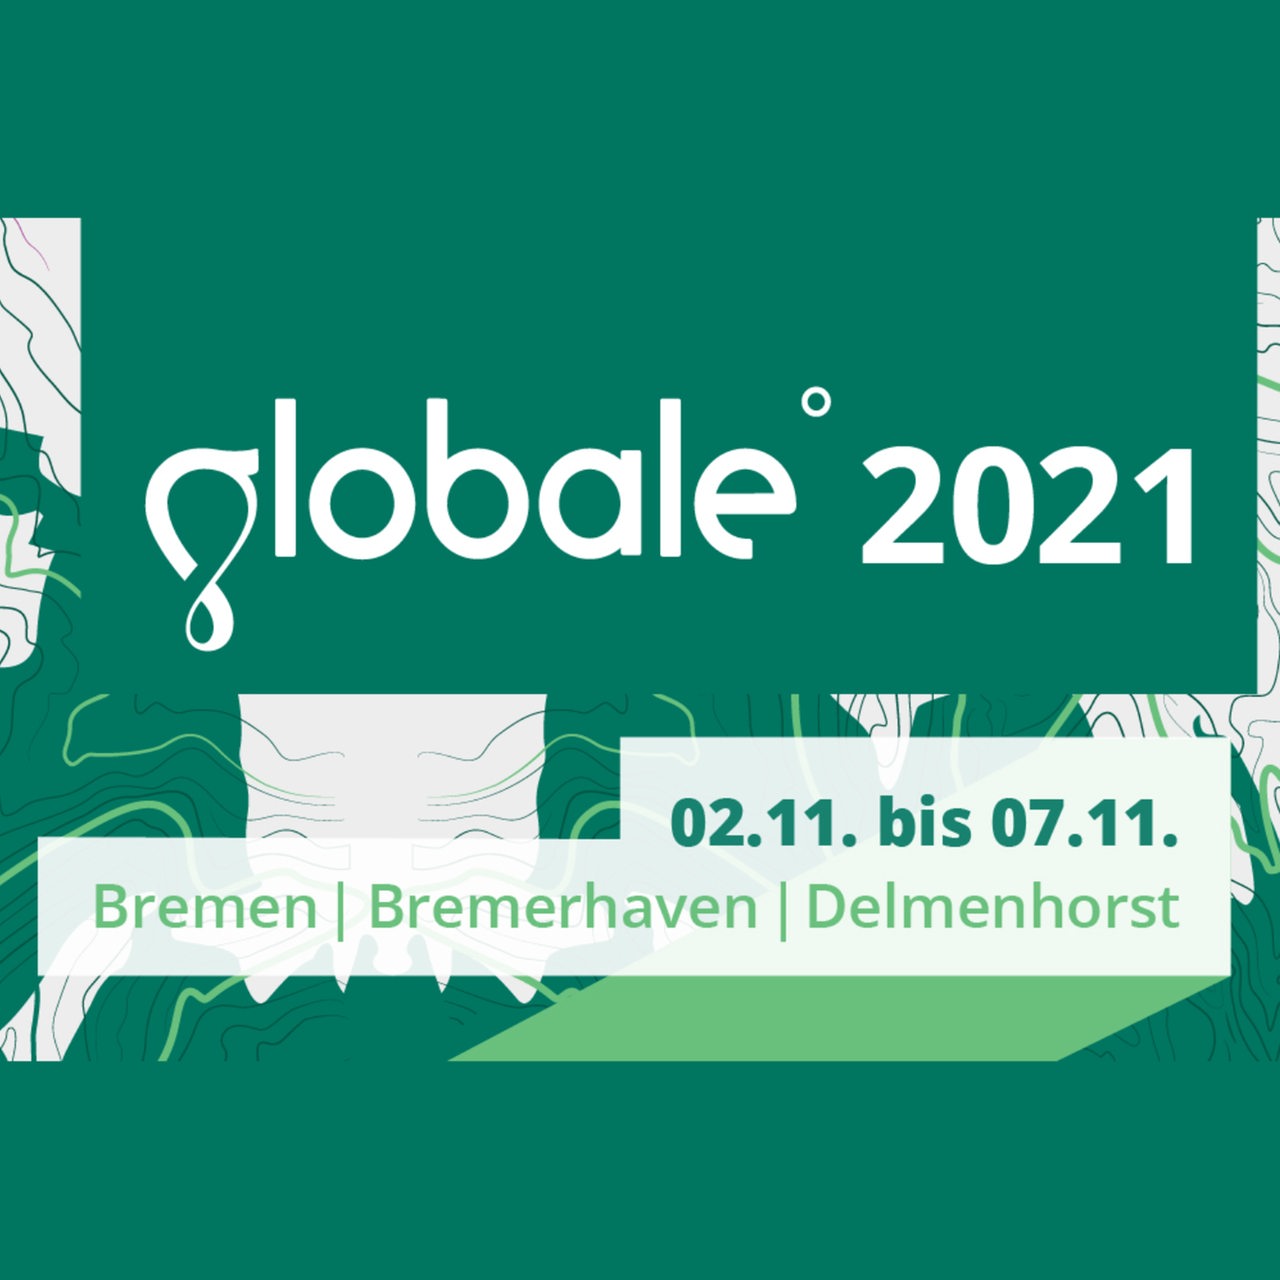 Logo des Literaturfestivals Globale vom 2.11. bis 7.11.2021